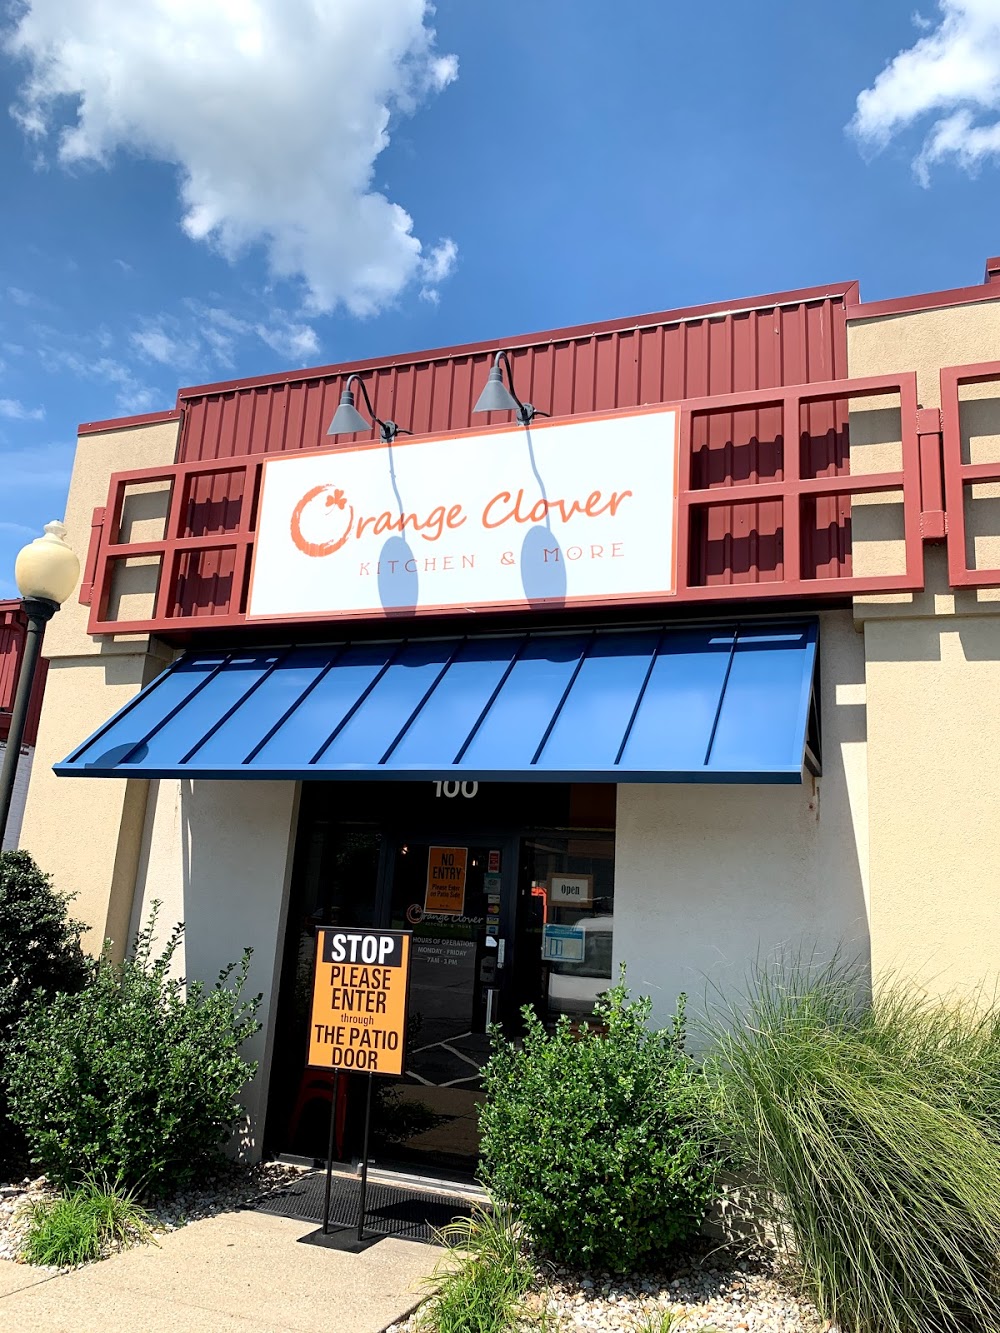 Orange Clover Kitchen & More